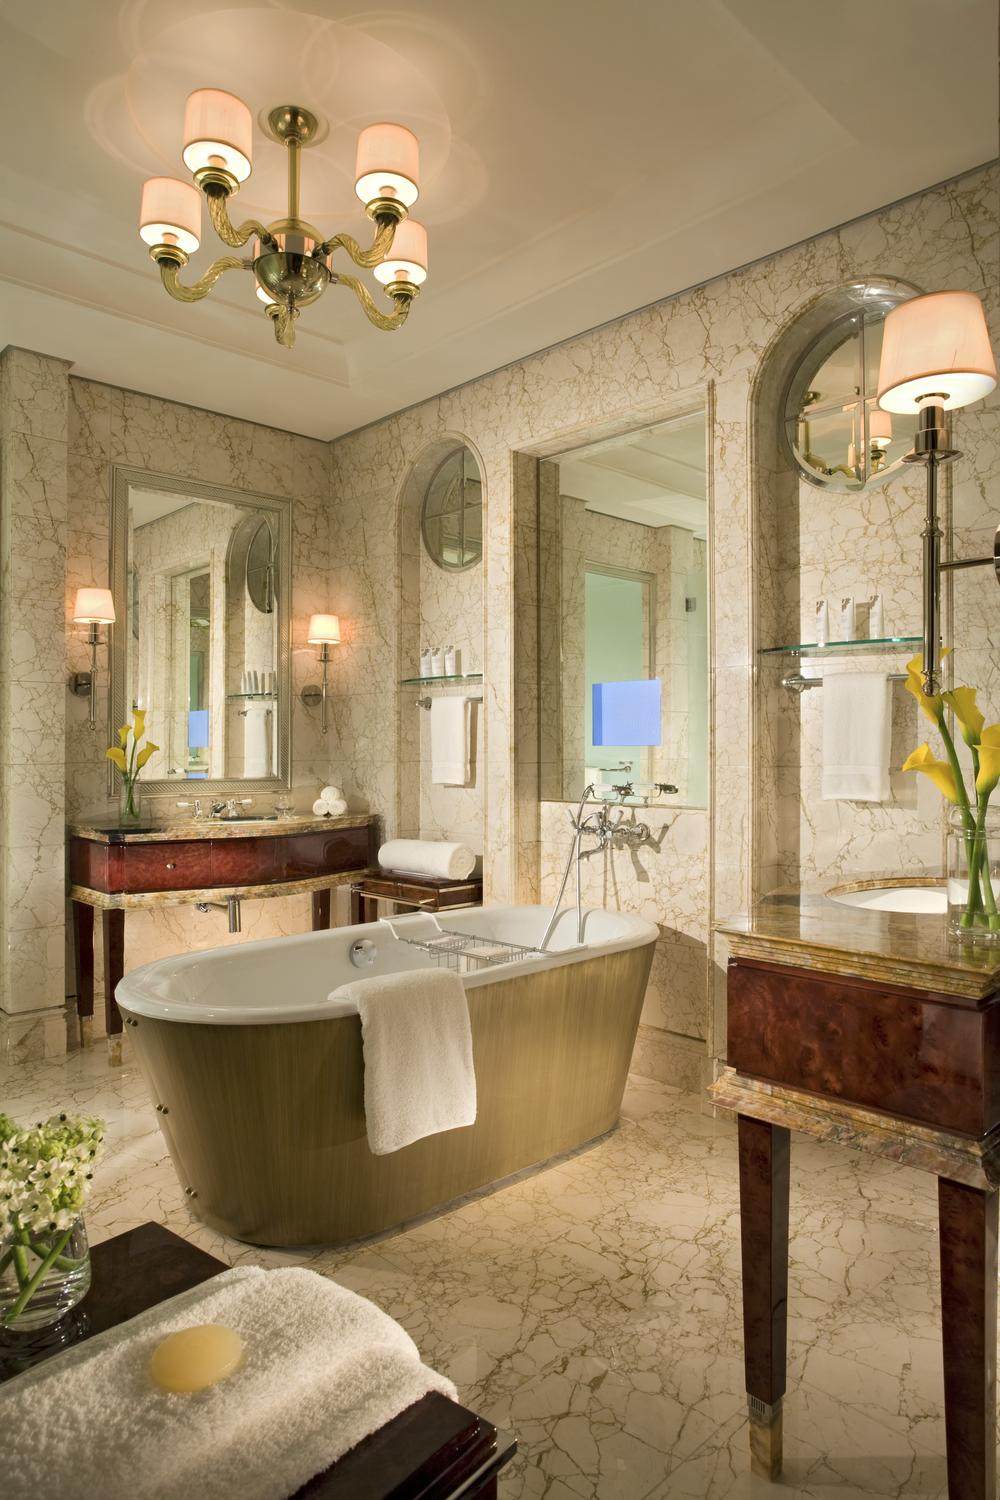 新加坡瑞吉酒店 he St. Regis Singapore_22)The St. Regis Singapore—Excutive Deluxe Room - Marble Bathroom 拍攝者.jpg